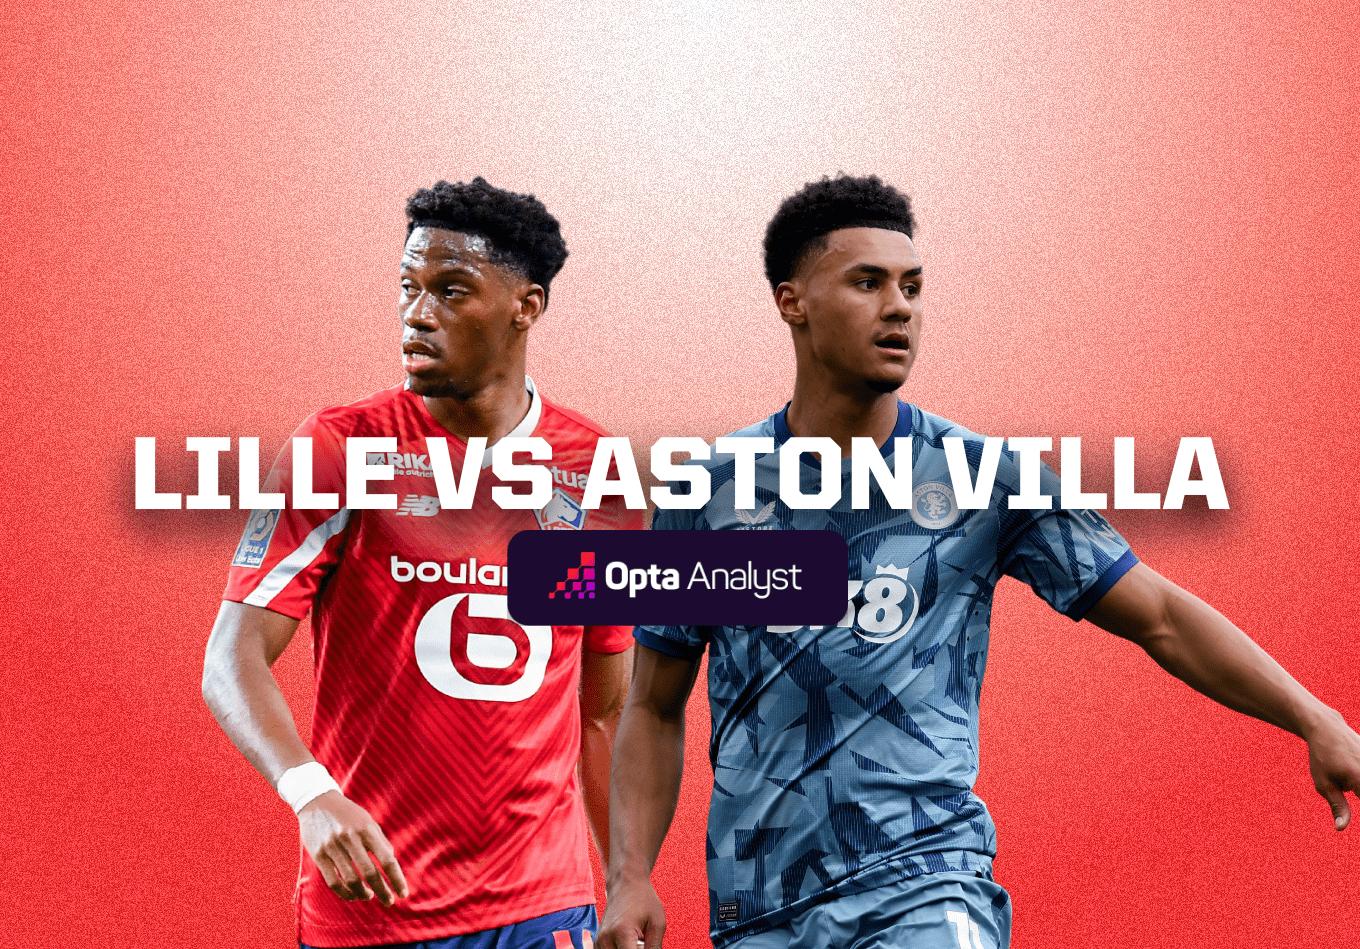 Lille vs Aston Villa Prediction and Preview